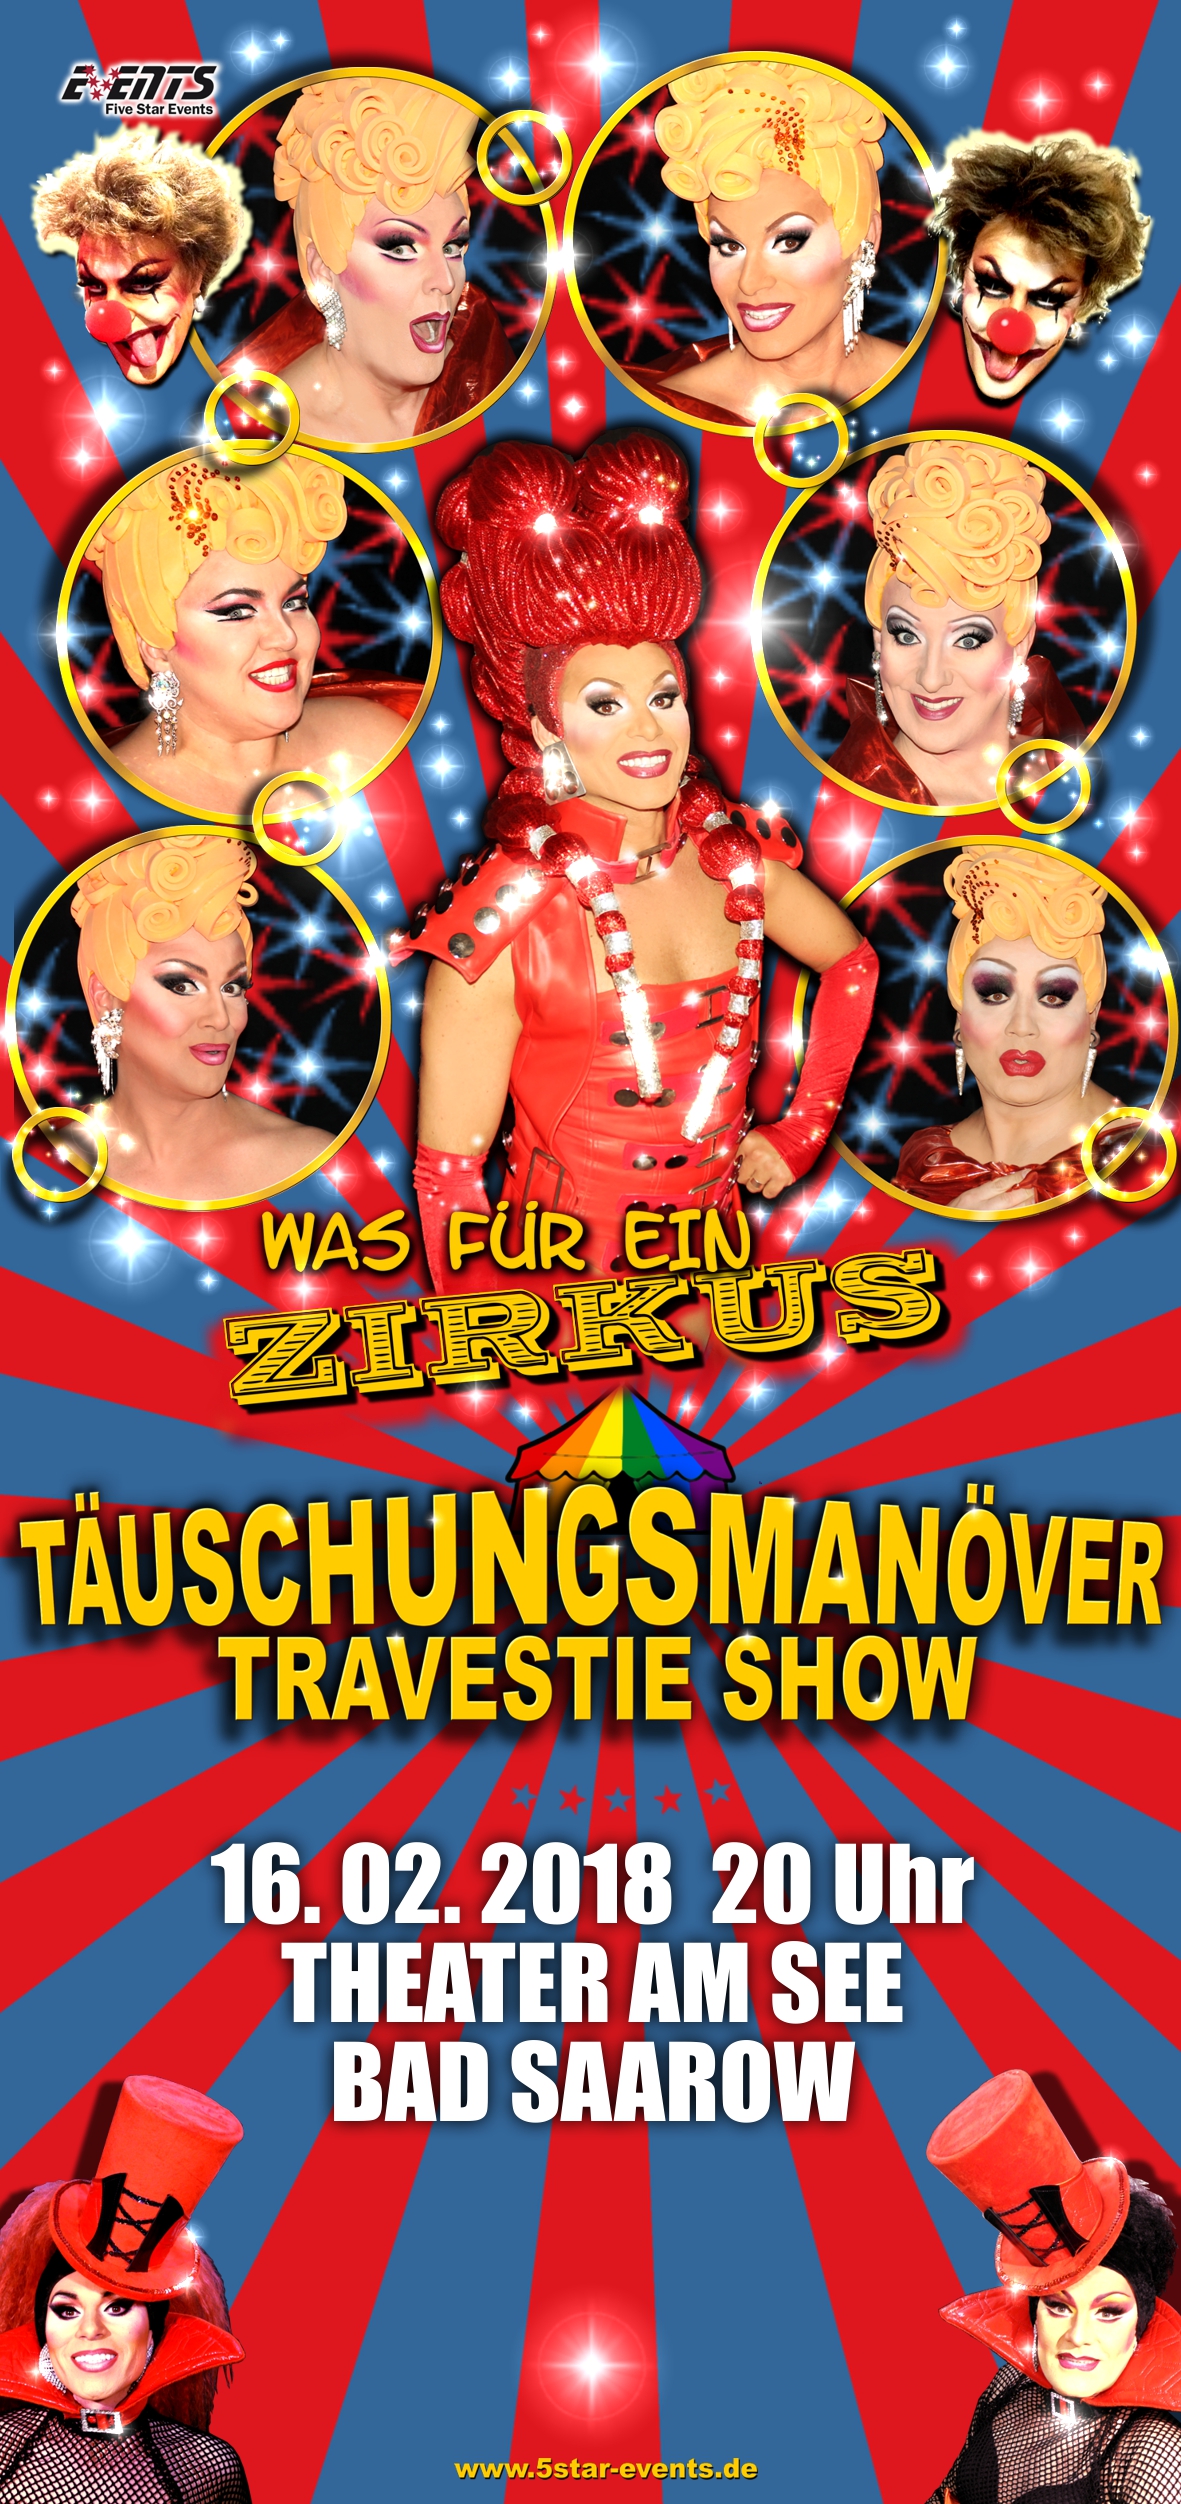 Täuschungsmanöver Travestie-Show, Was für ein Zirkus! in Bad Saarwo